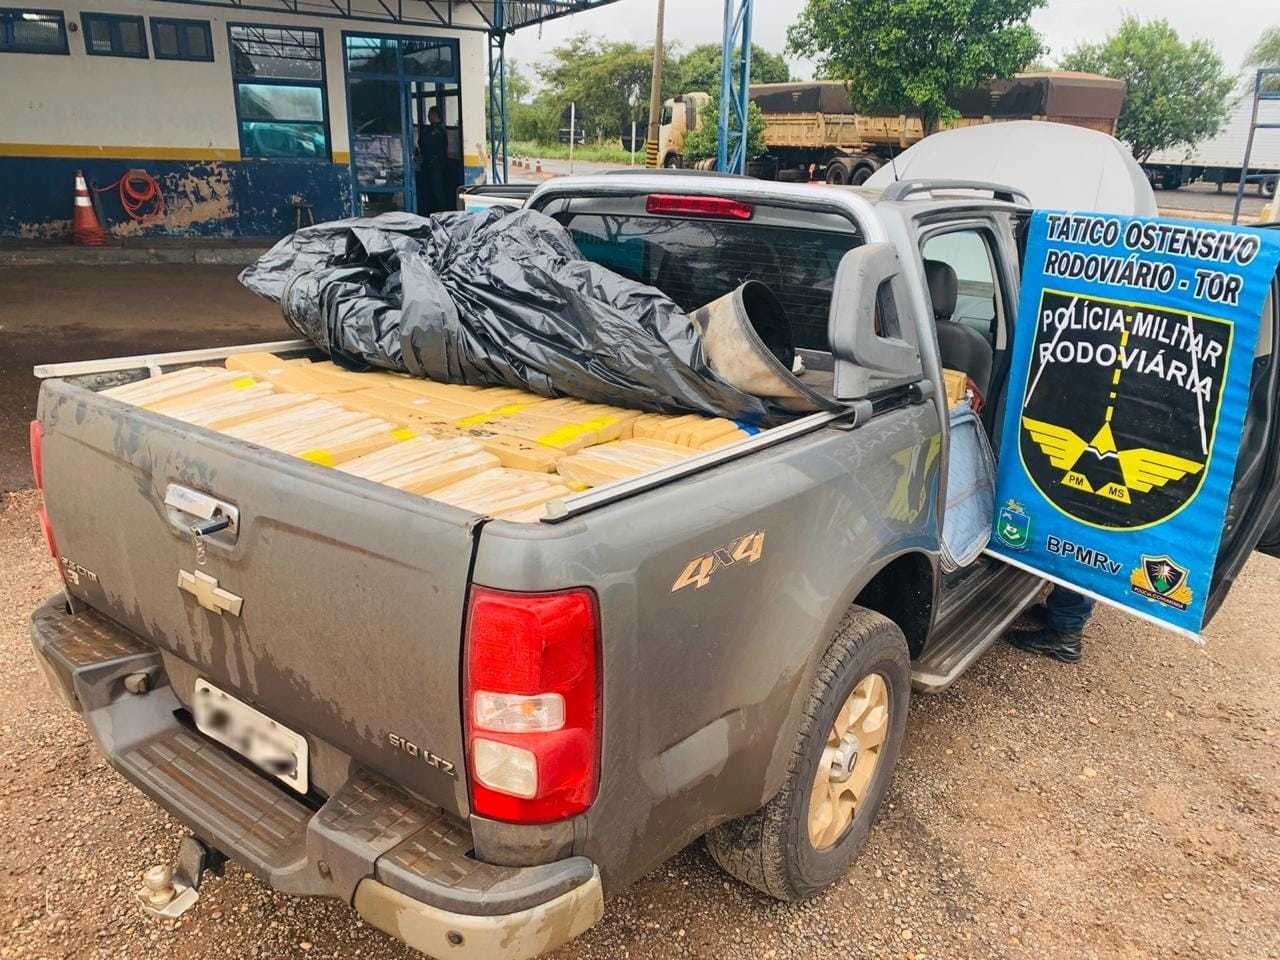 As centenas de tabletes da droga estavam sendo transportados na carroceria da camionete. (Foto: PMR) 